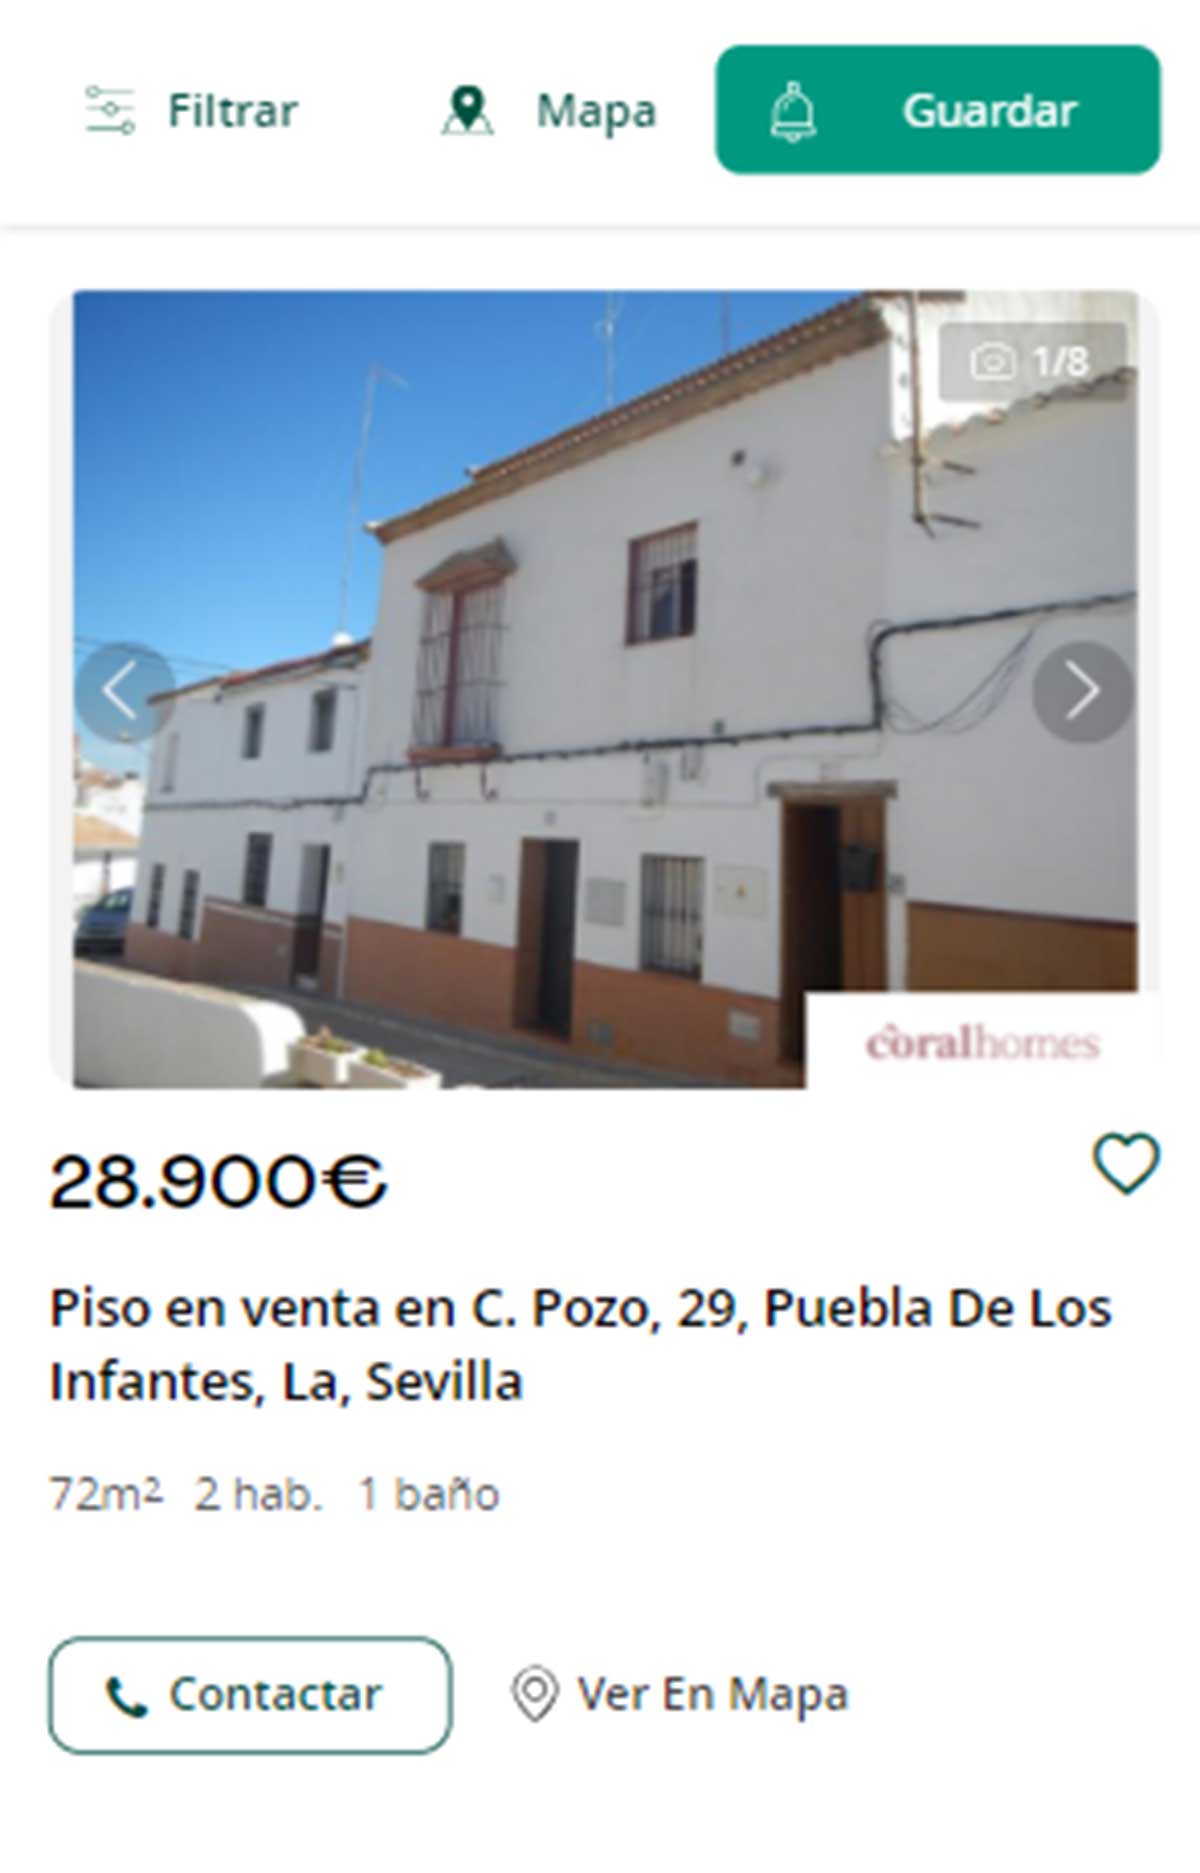 Piso en Sevilla por 28.000 euros